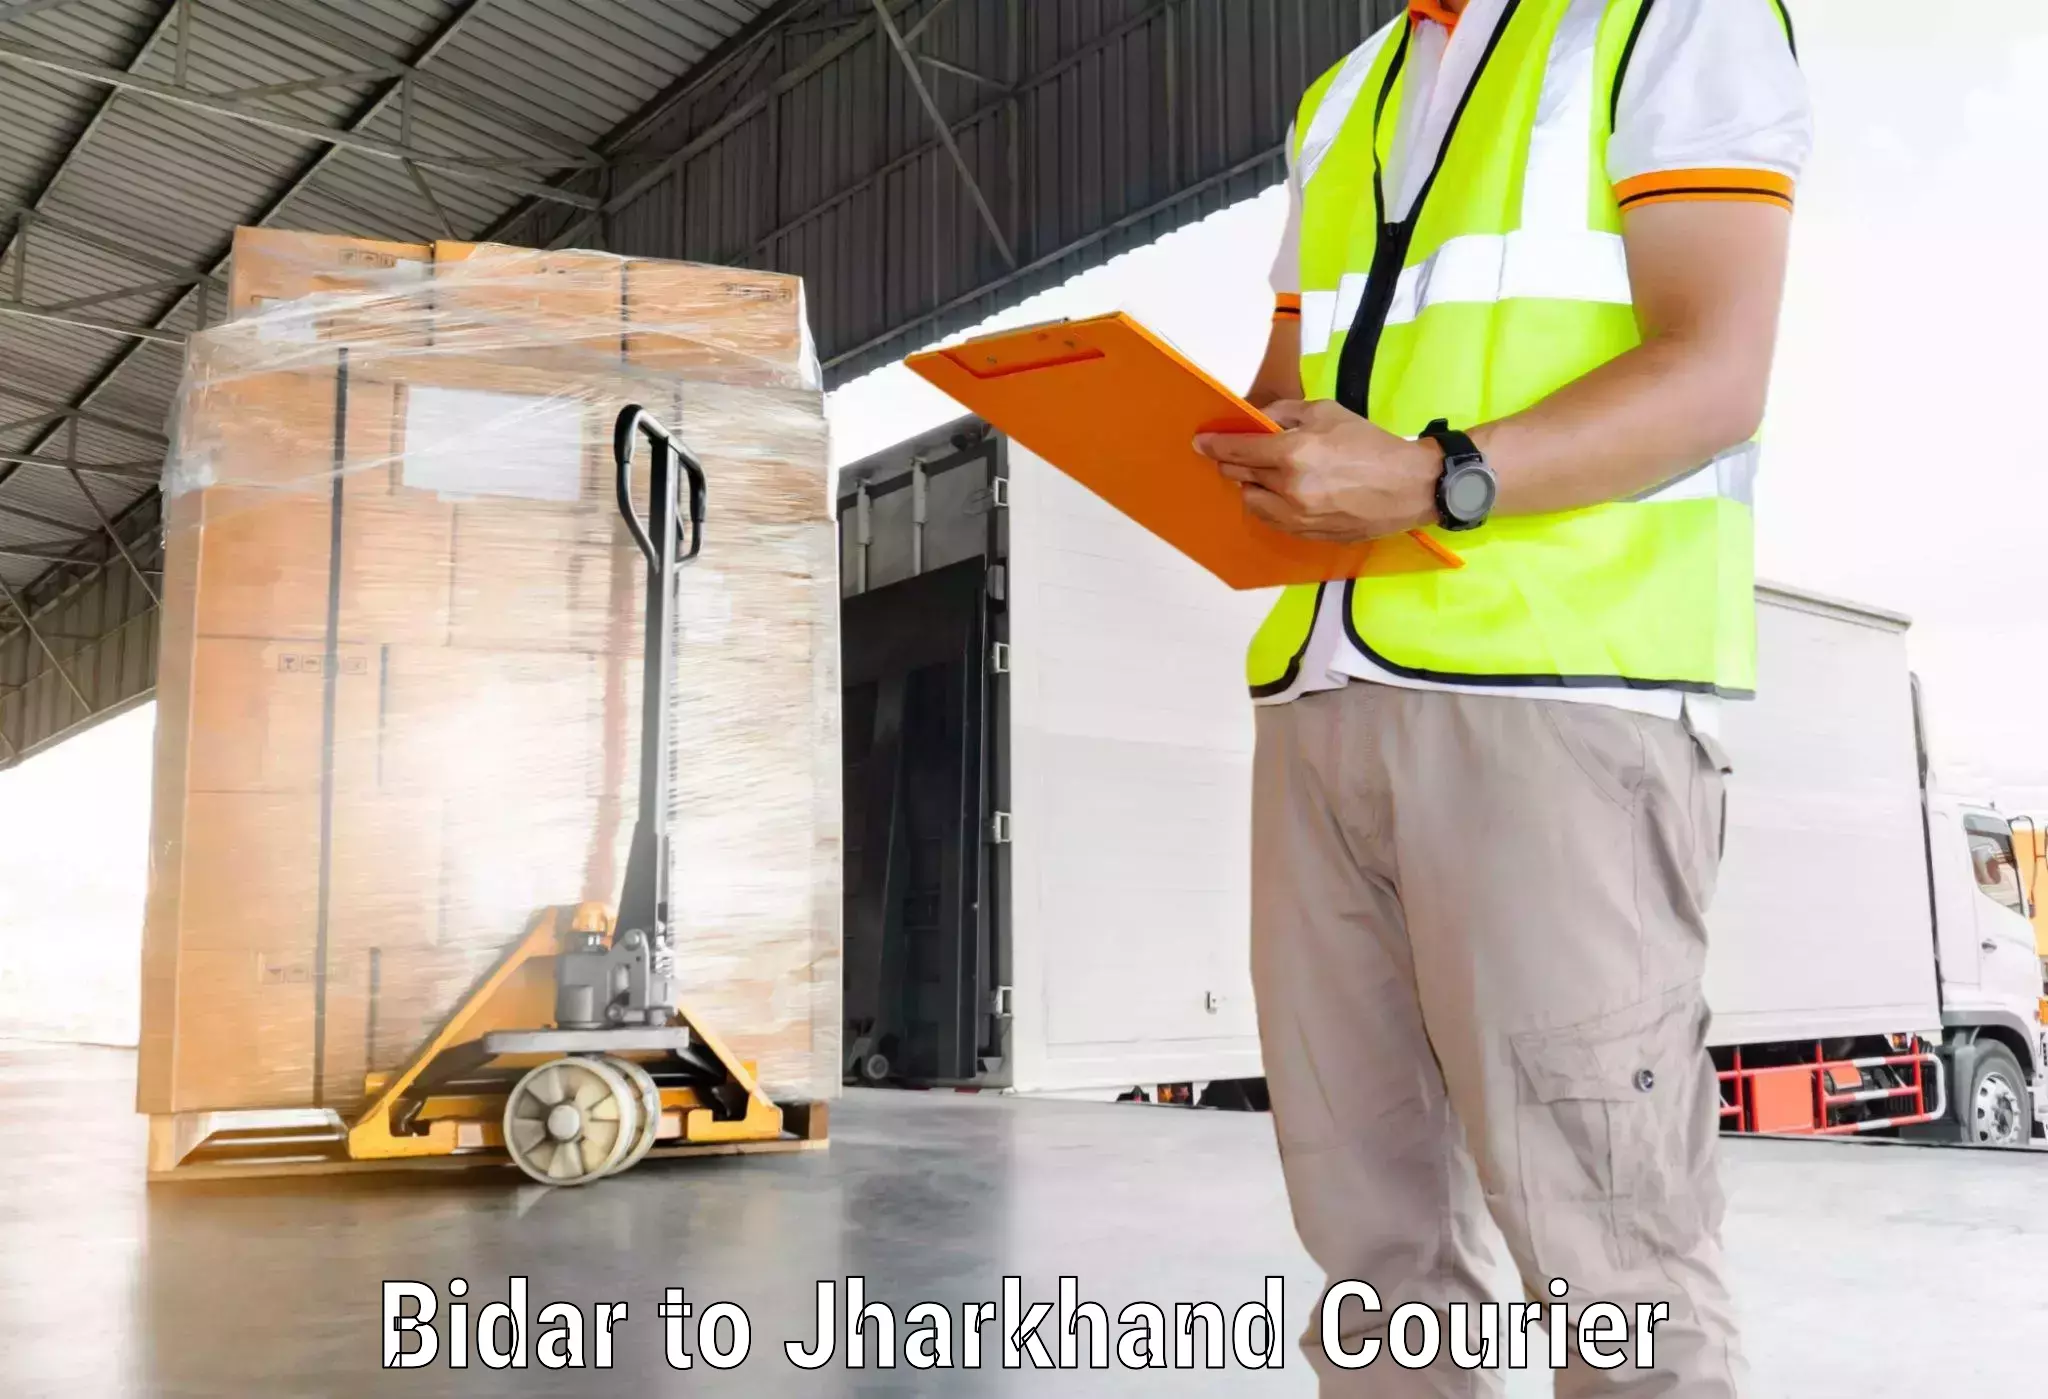 Fast-track shipping solutions Bidar to Bero Ranchi